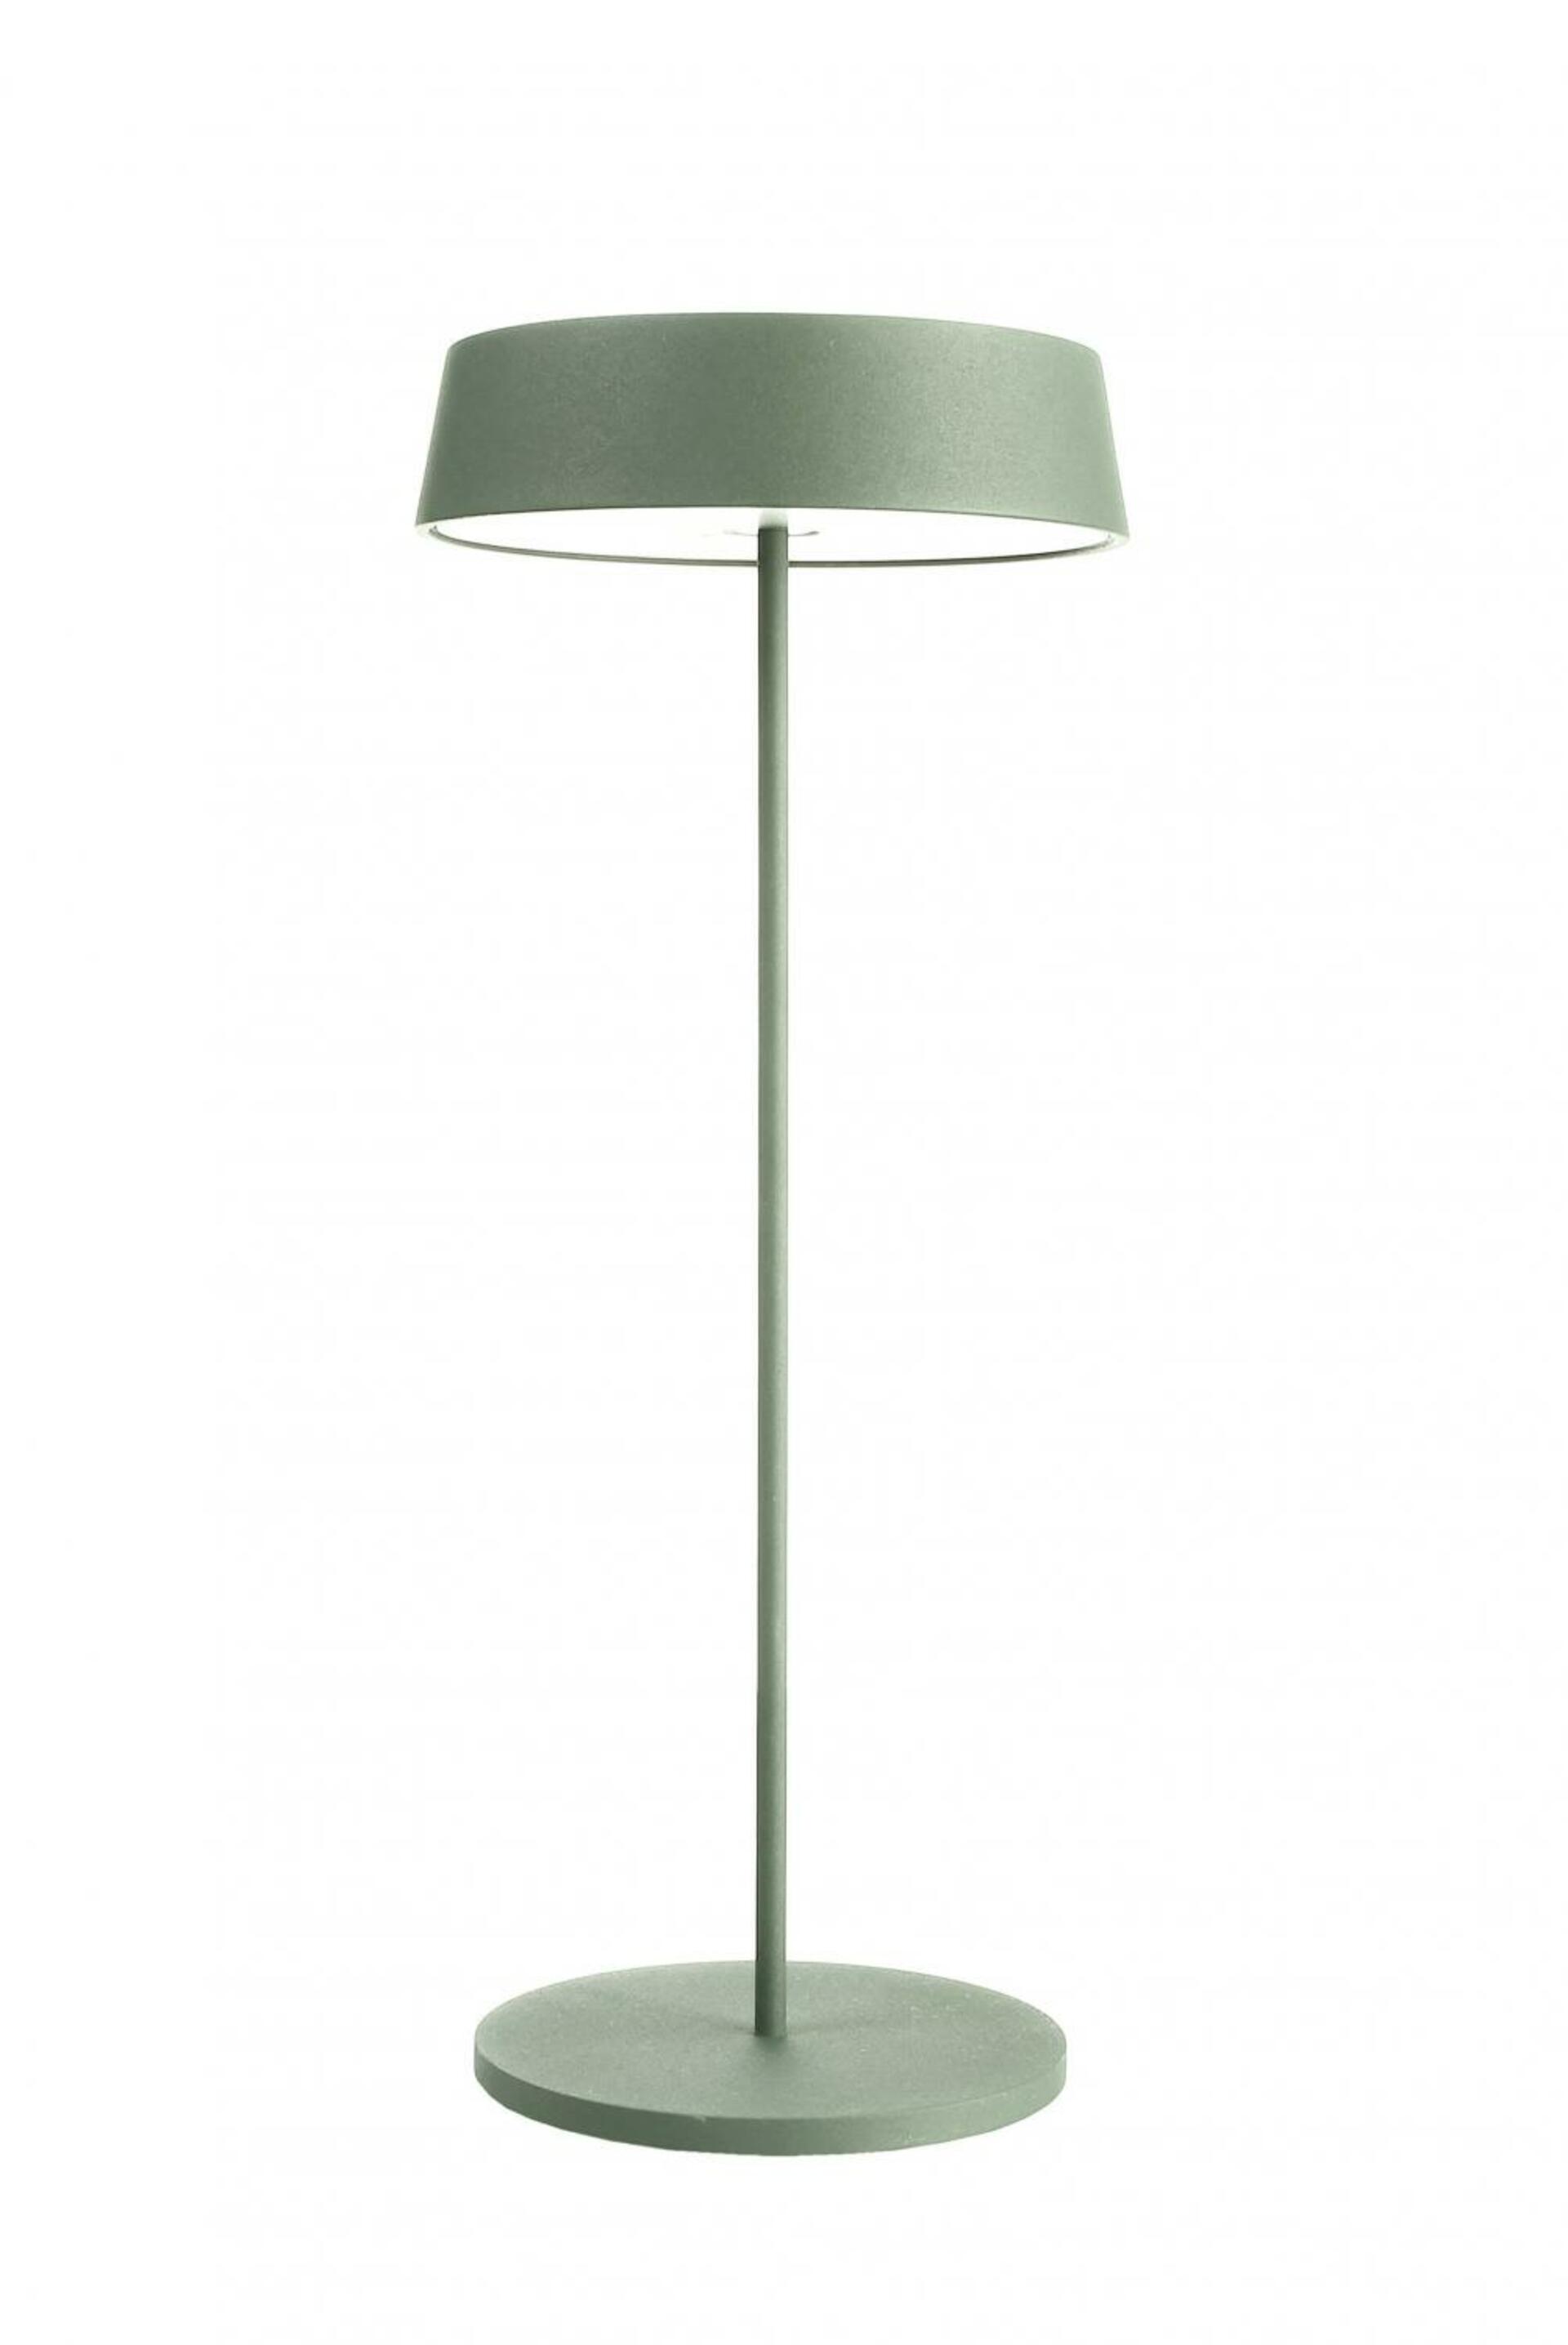 Light Impressions Deko-Light stolní lampa Miram stojací noha + hlava zelená sada 3,7V DC 2,20 W 3000 K 196 lm 120 zelená 620098